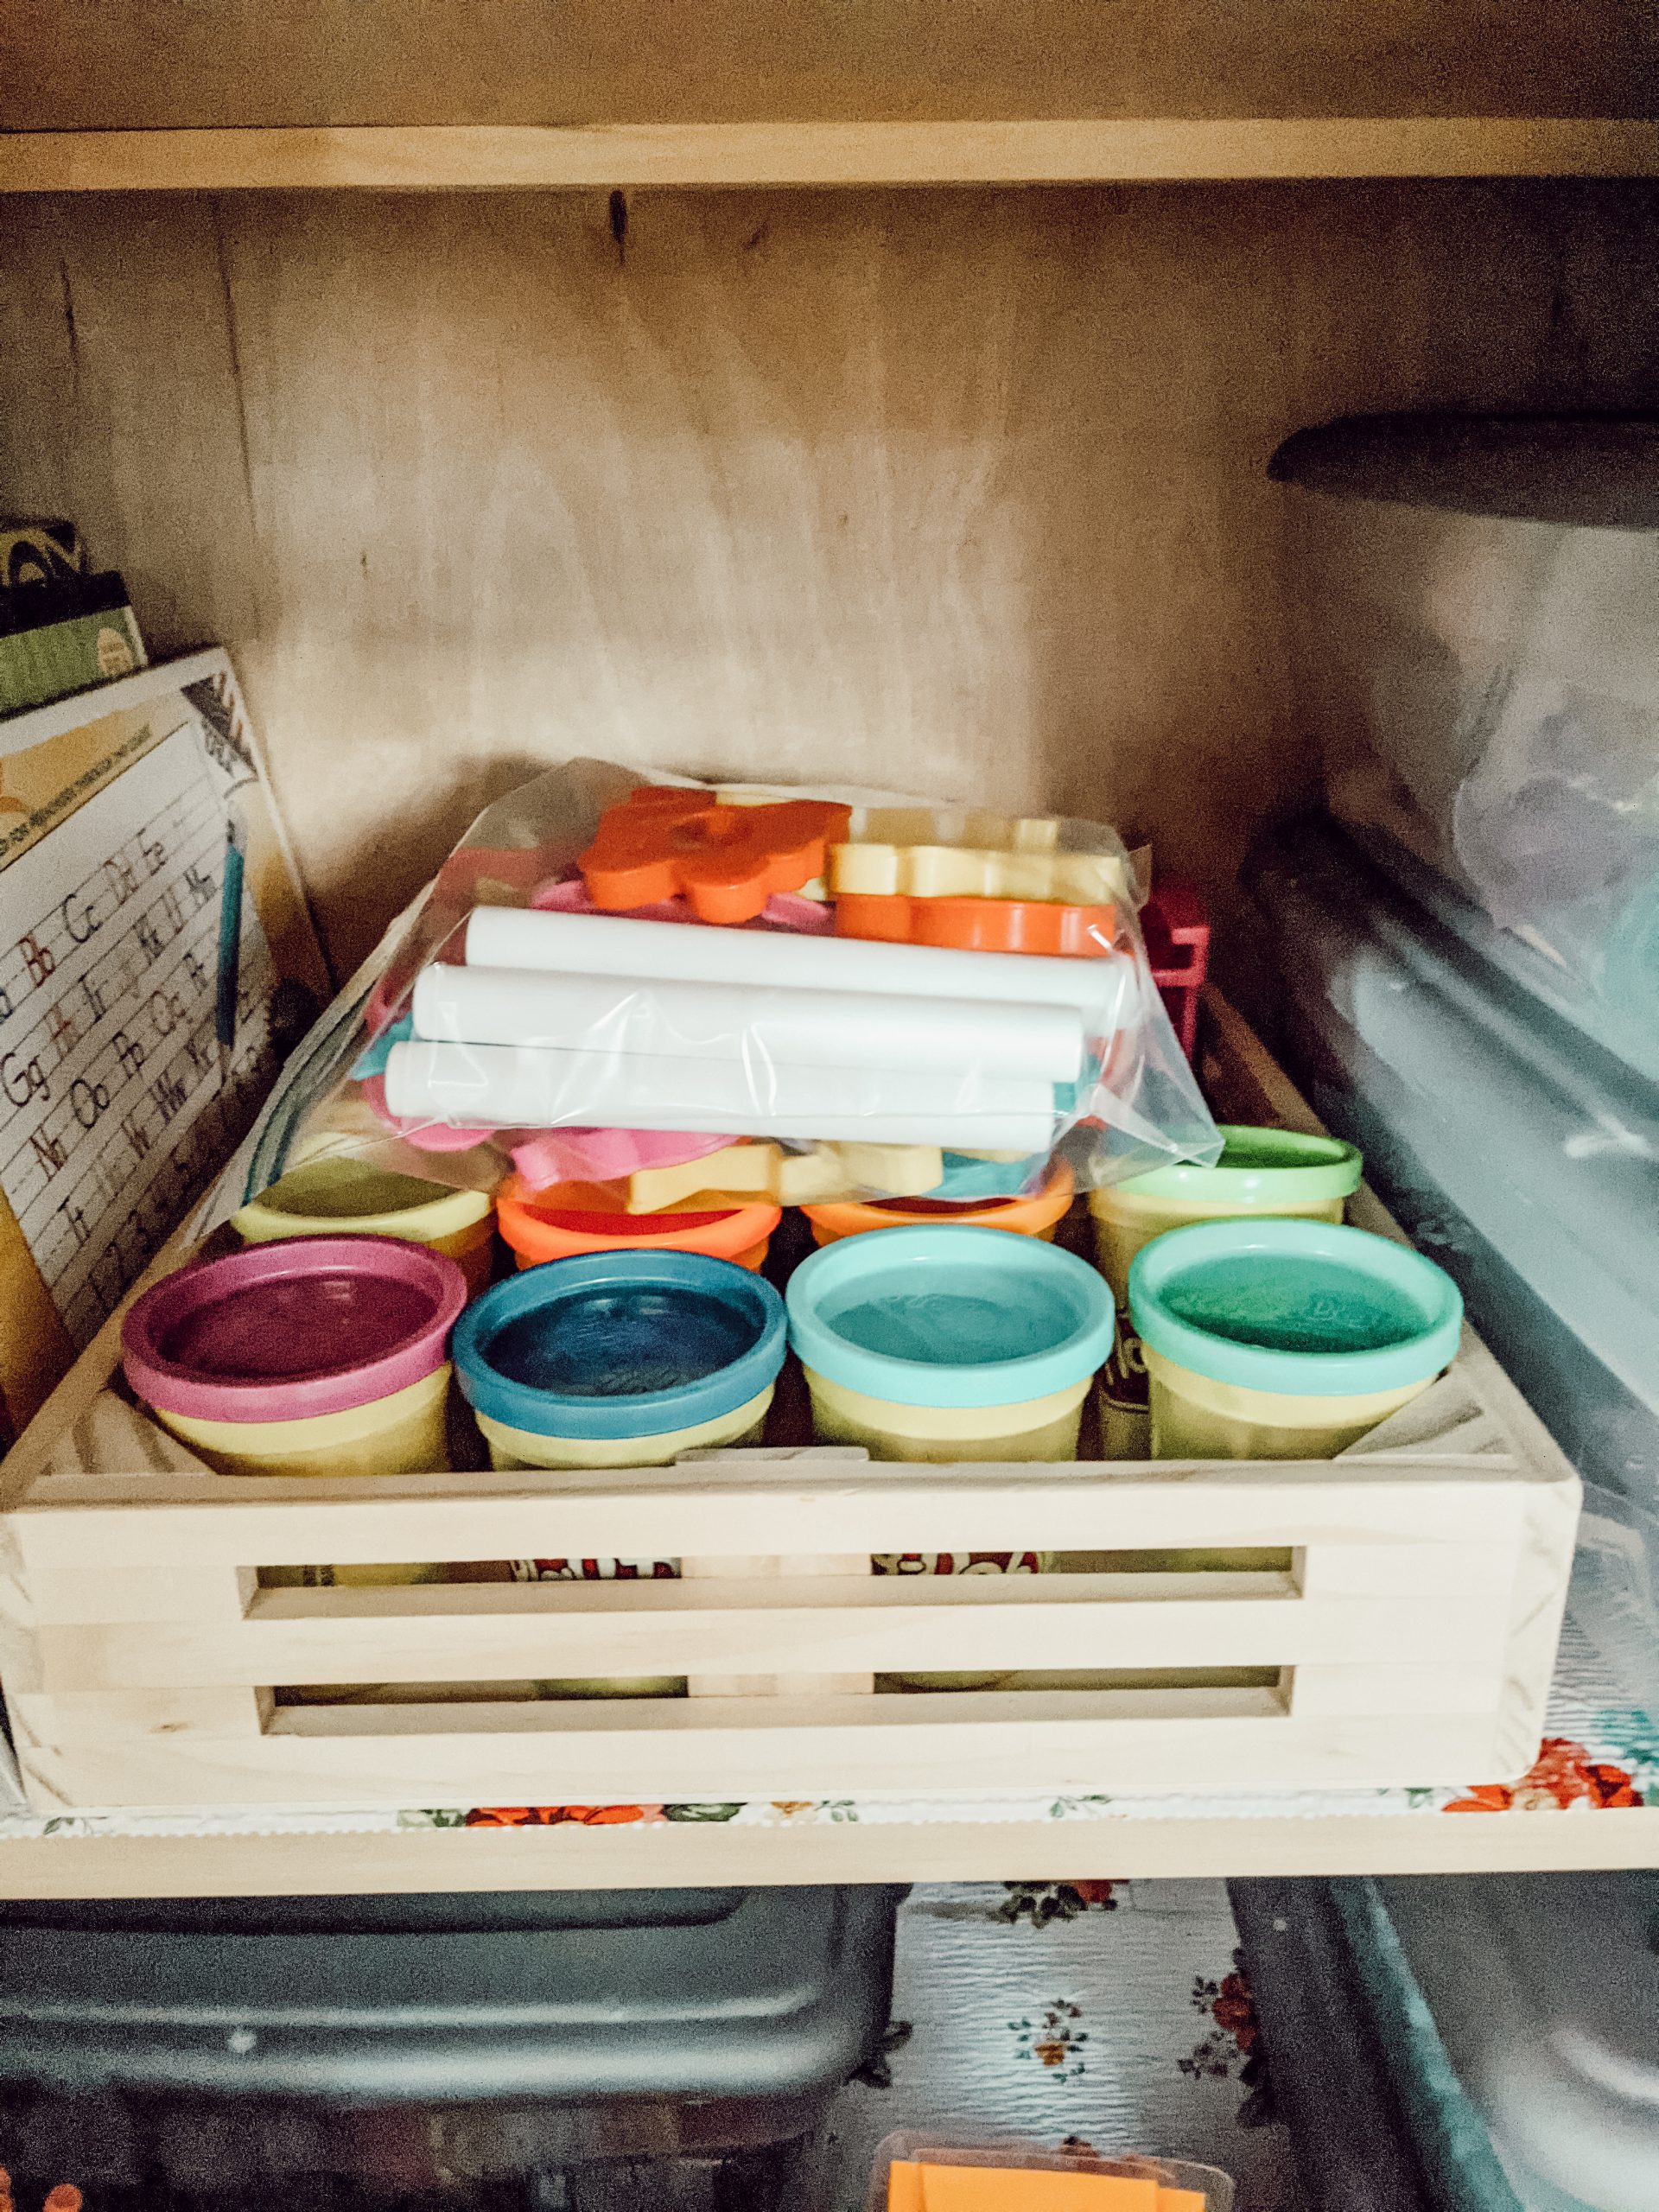 playdough storage caddy in kitchen cabinet